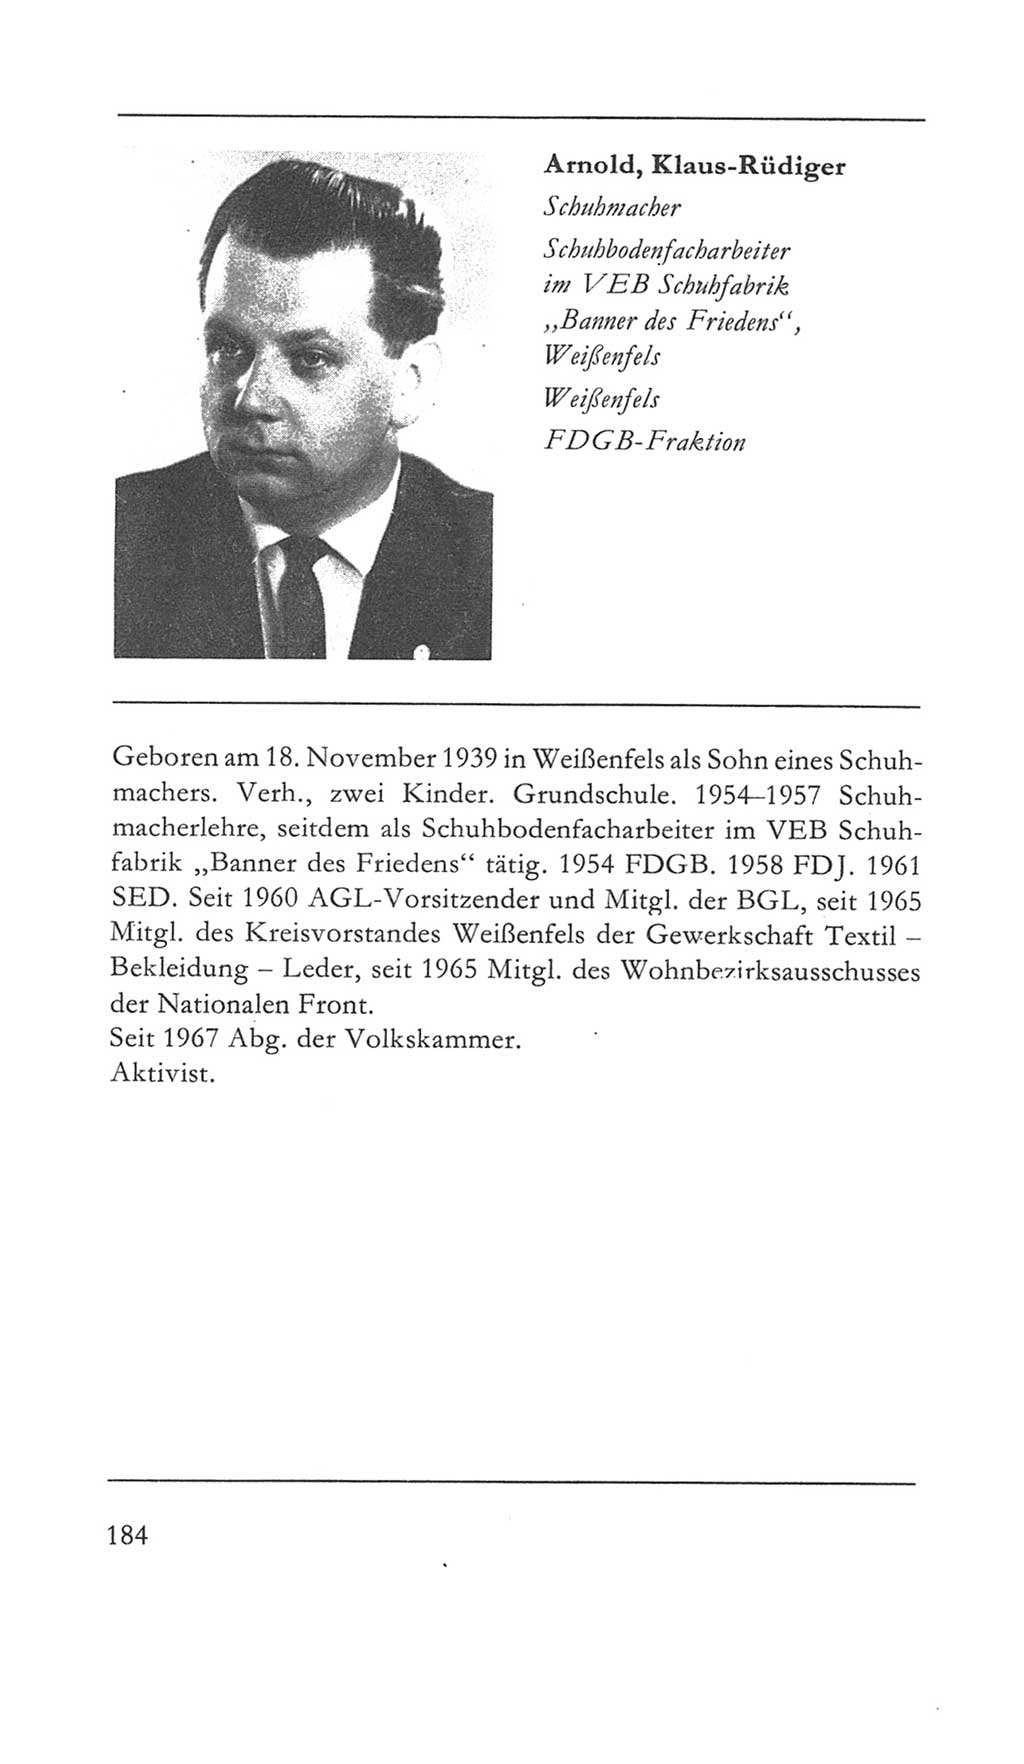 Volkskammer (VK) der Deutschen Demokratischen Republik (DDR) 5. Wahlperiode 1967-1971, Seite 184 (VK. DDR 5. WP. 1967-1971, S. 184)